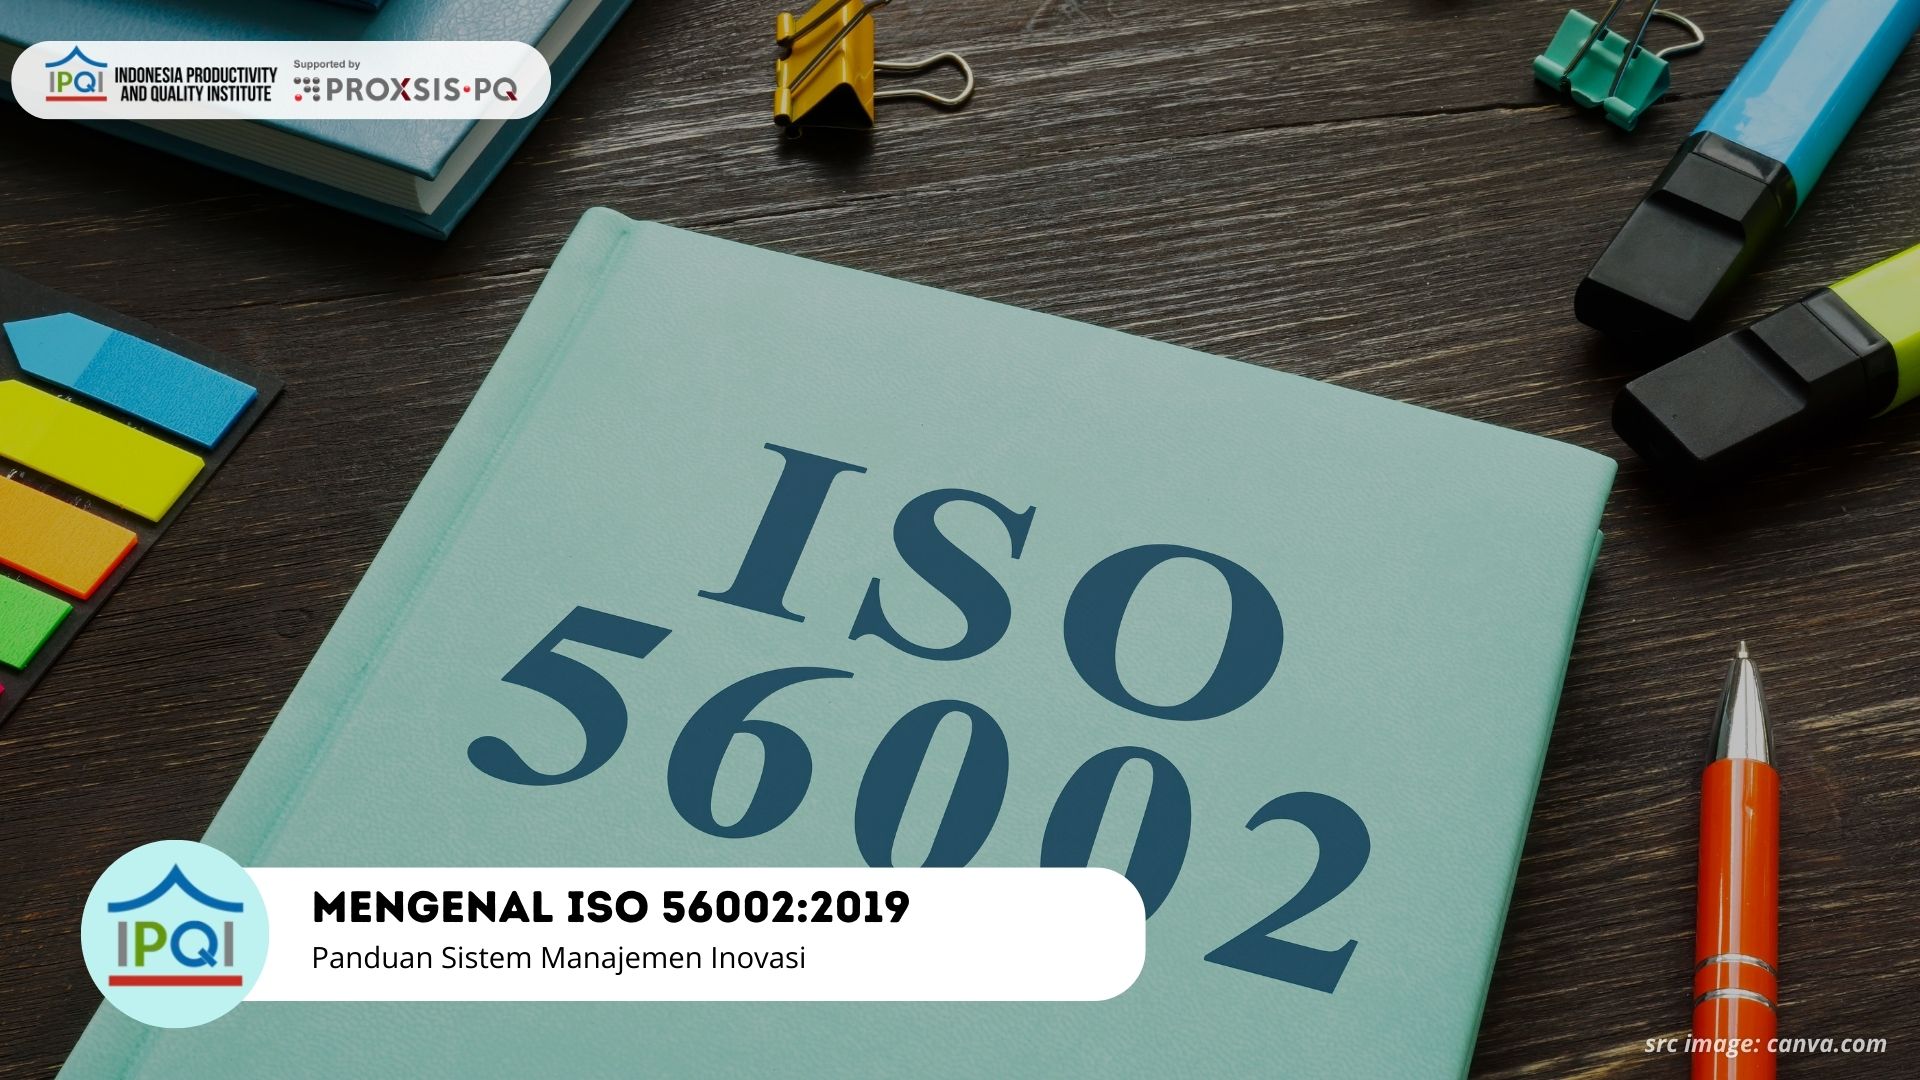 Mengenal ISO 56002:2019 - Panduan Sistem Manajemen Inovasi